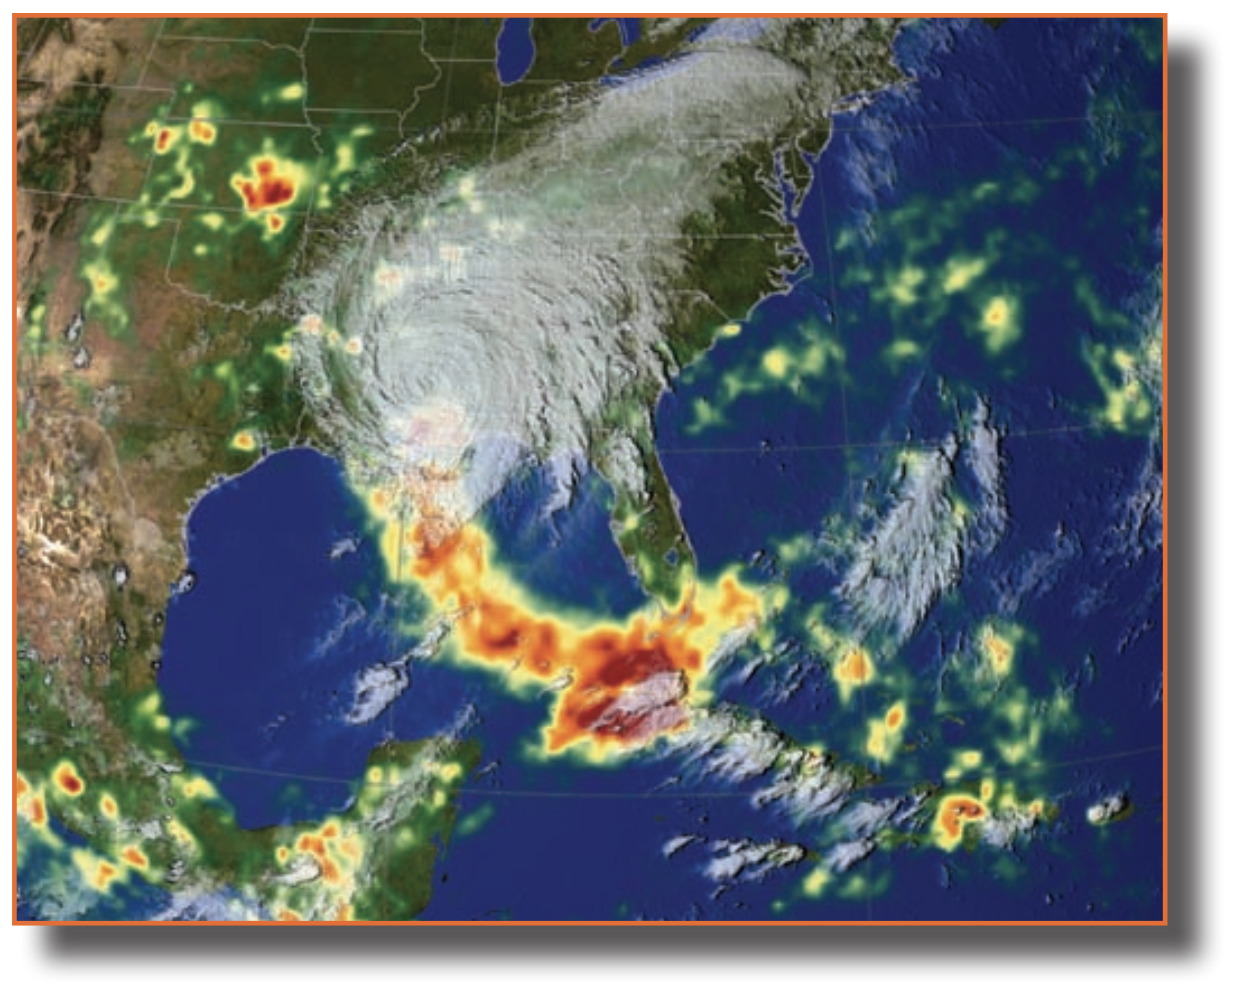 Image of Hurricane Katrina, credit: NASA